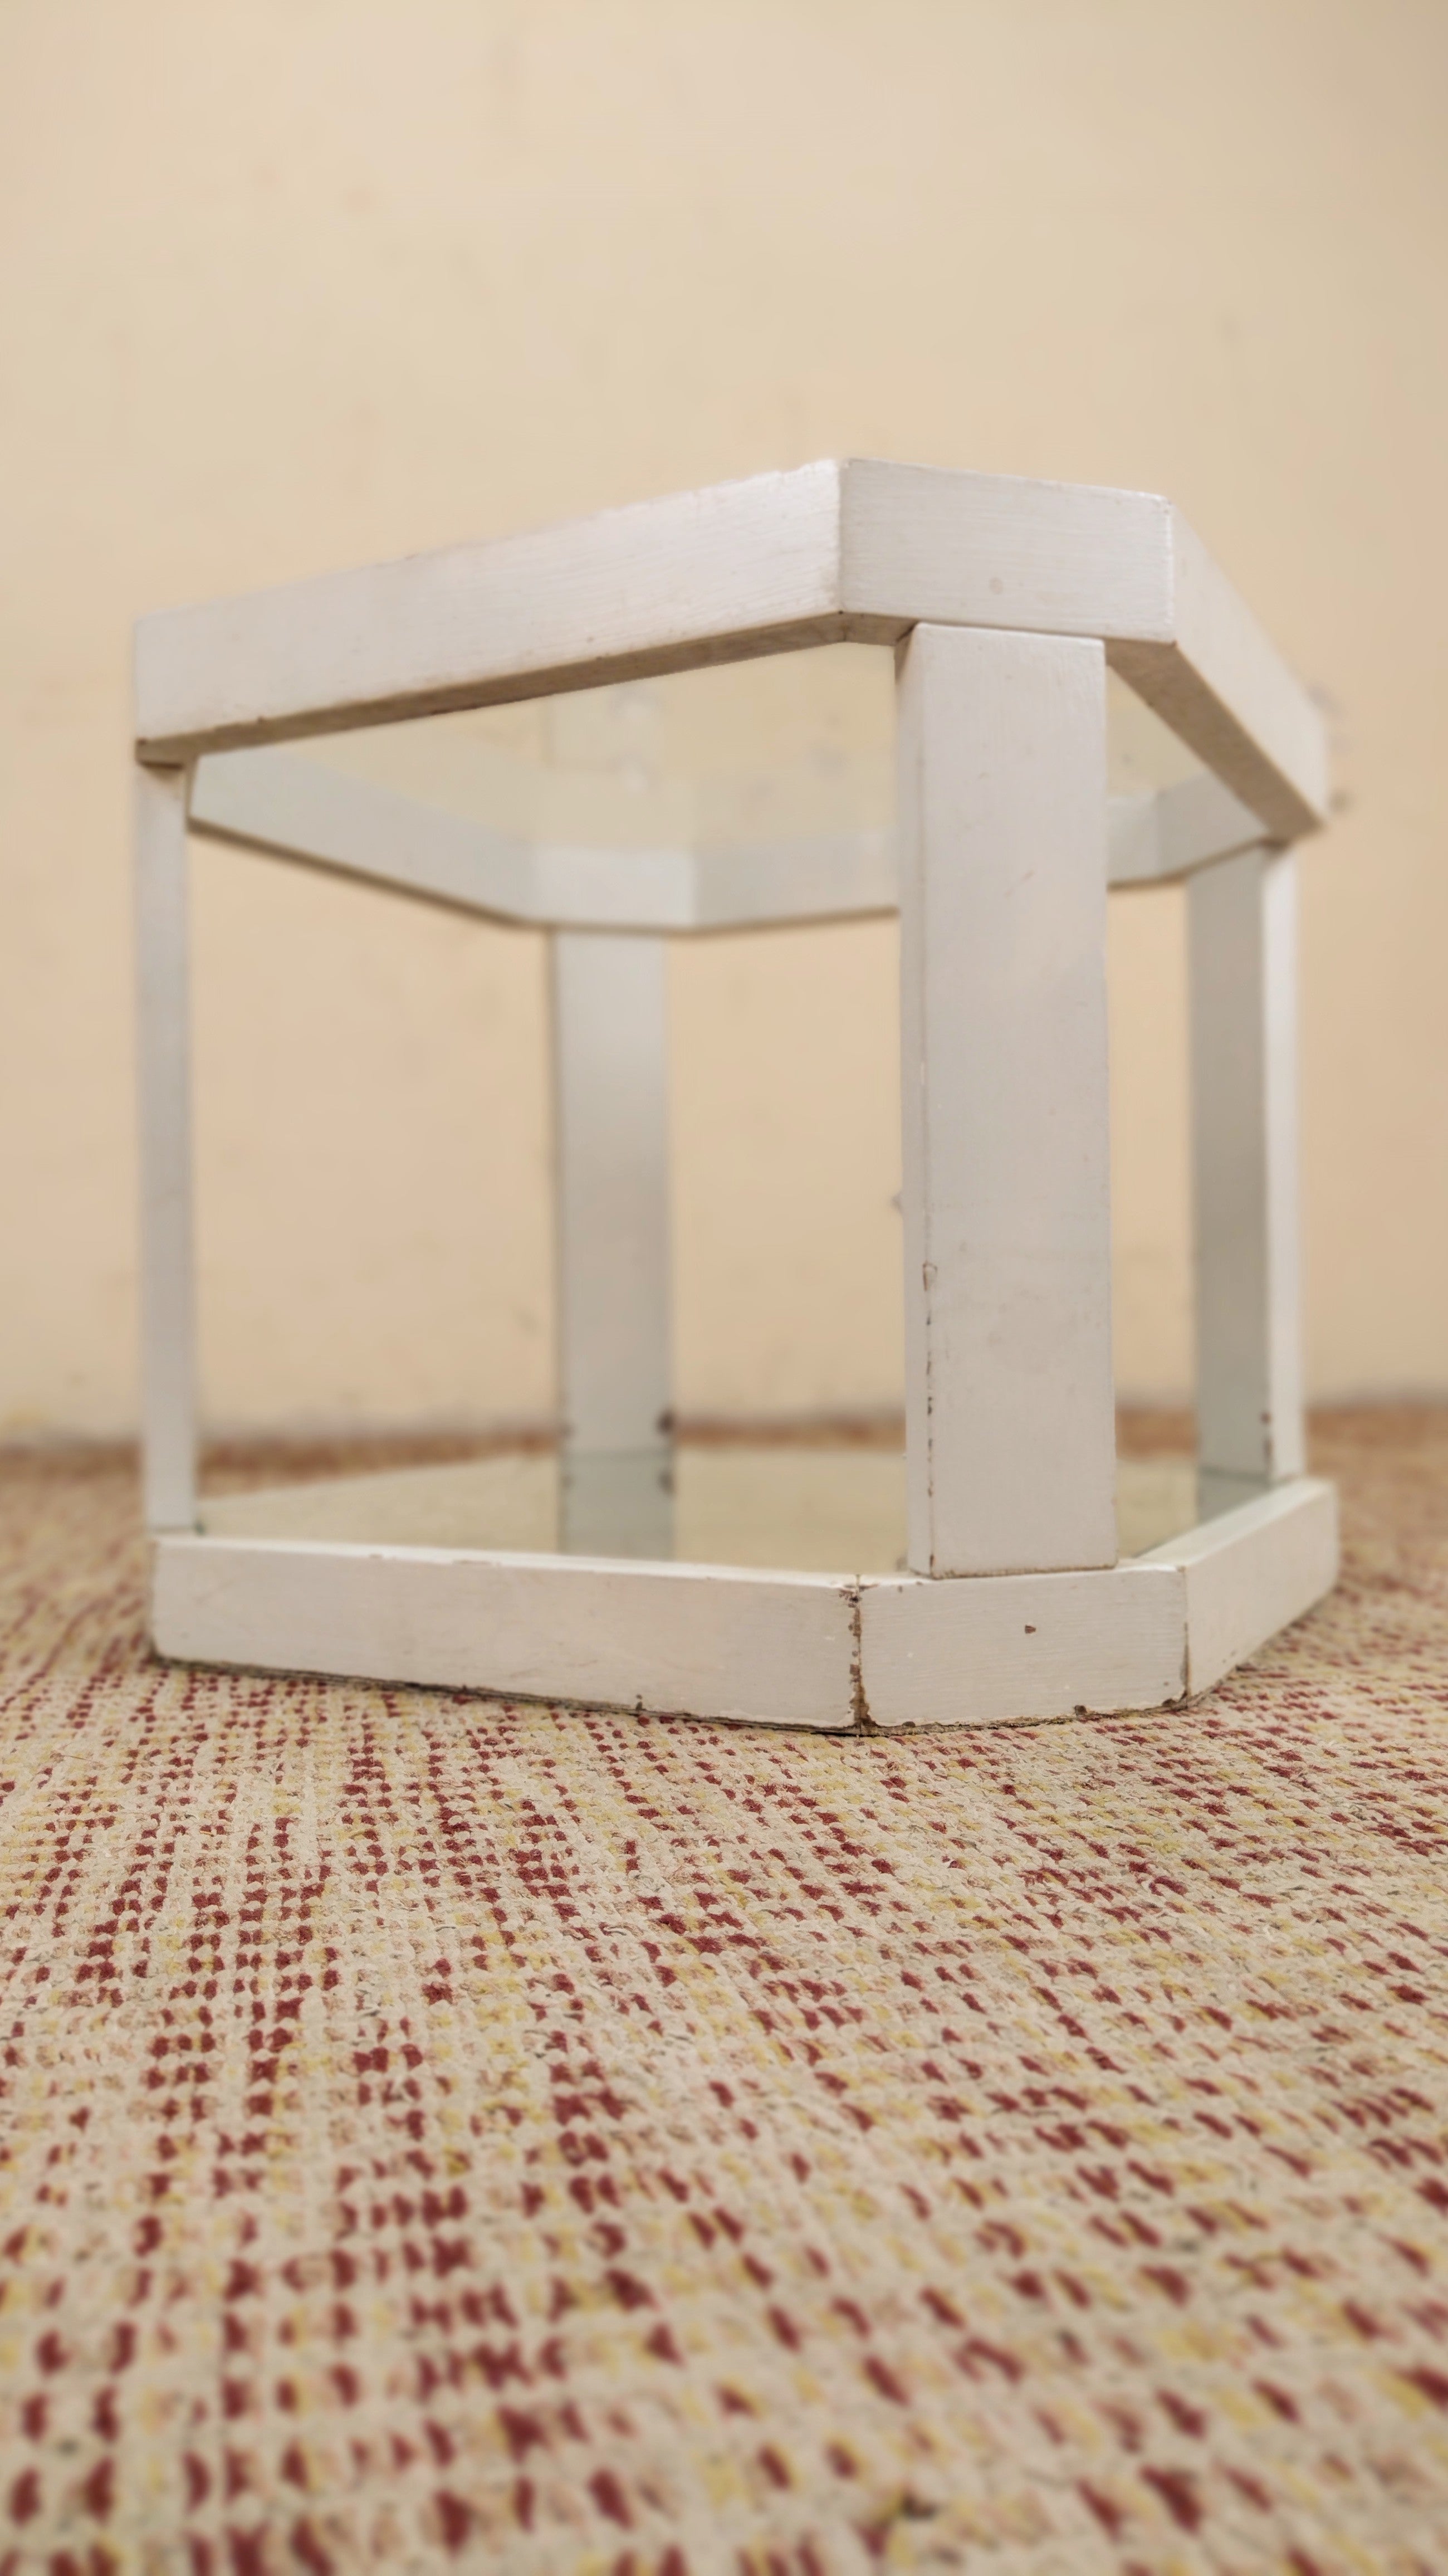 Mesinha de apoio Octógono com vidro em madeira laqueada em branco (55cm X 55cm)